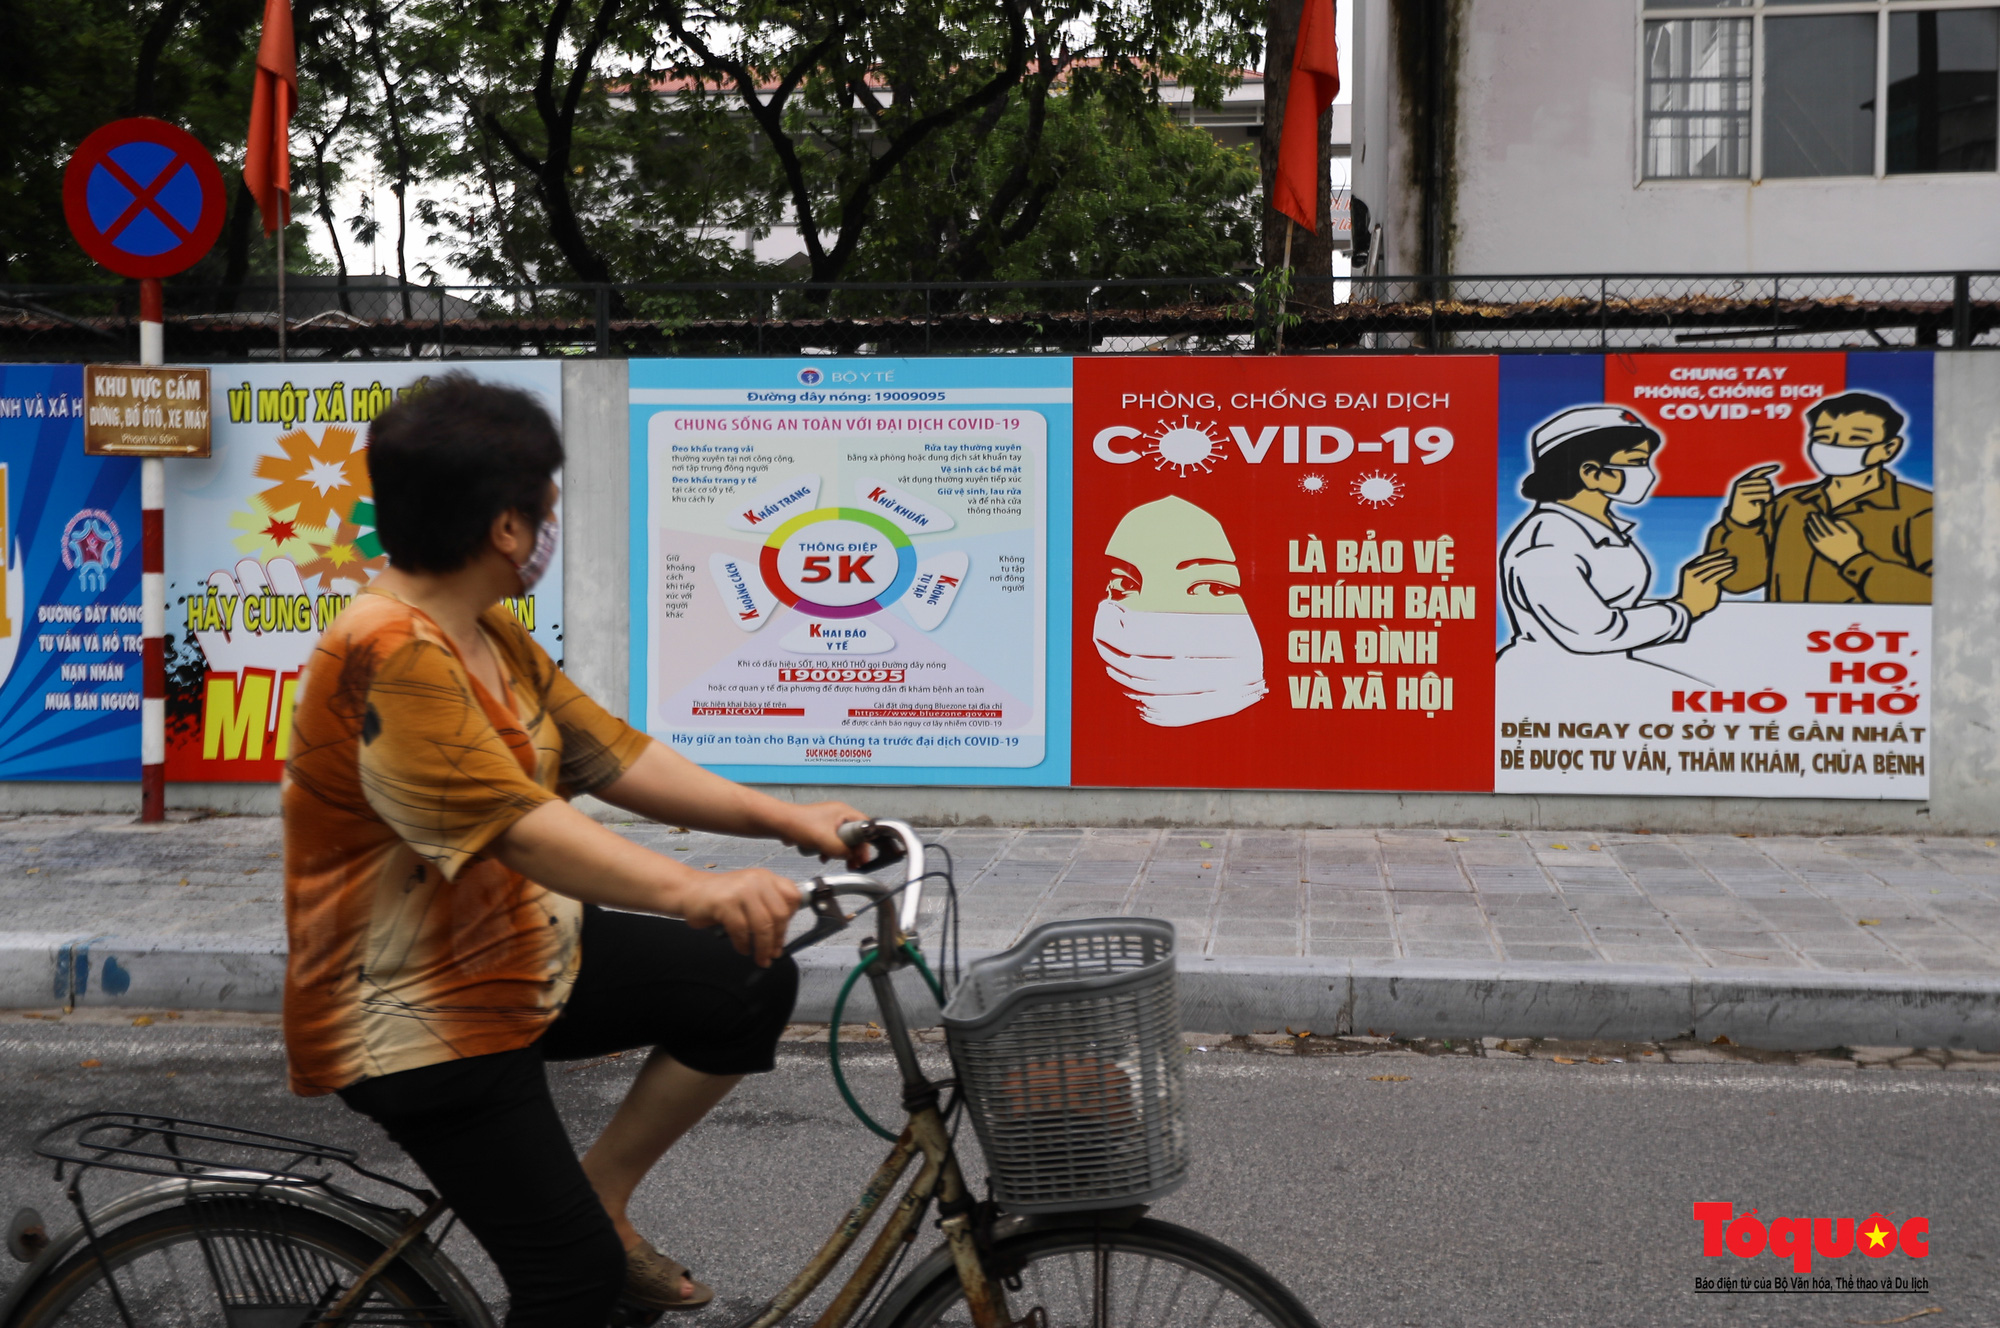 Pano, hình ảnh cổ động phòng chống dịch COVID-19 trên khắp đường phố Hà Nội - Ảnh 7.